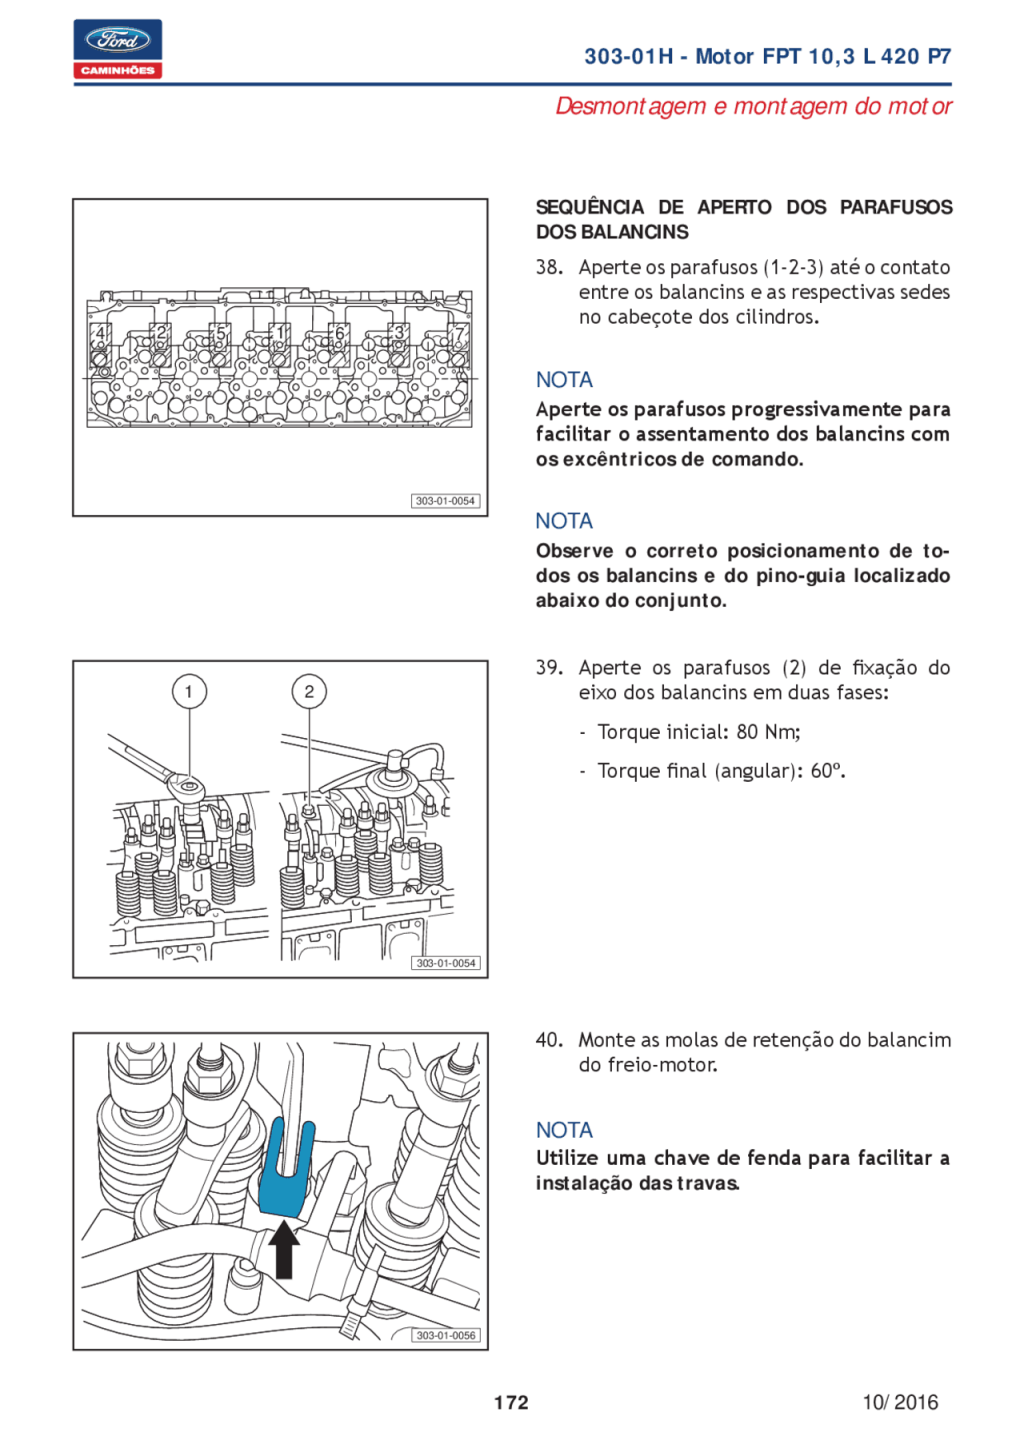 Picture of: Manual Técnico ford cargo   Manuais, Projetos, Pesquisas